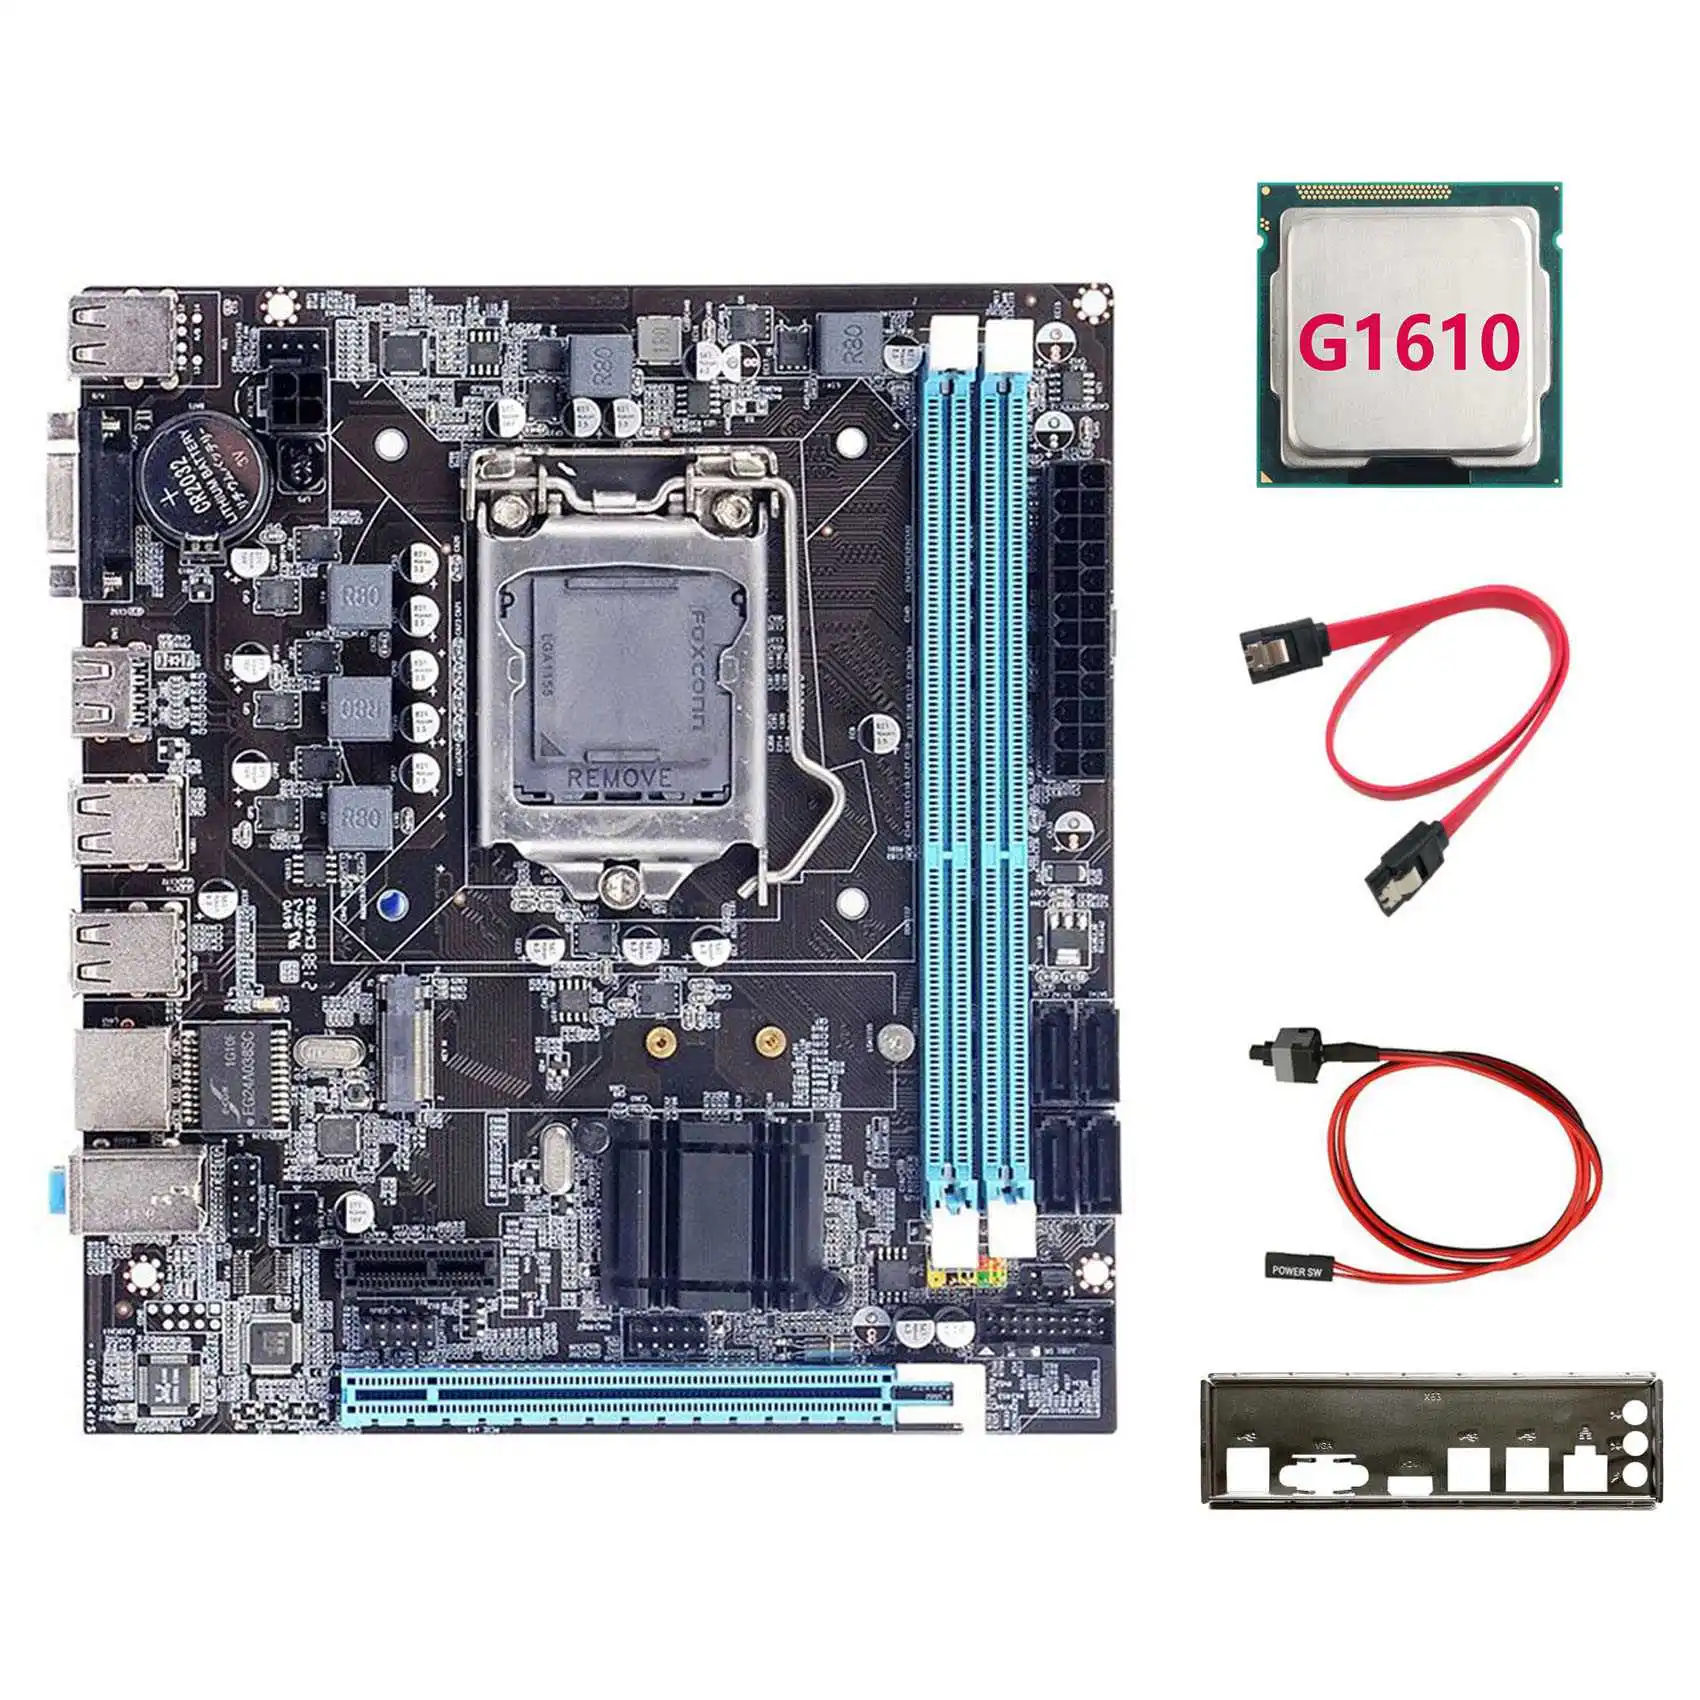 

Материнская плата H61 + процессор G1610 + кабель SATA + кабель переключателя + перегородка LGA1155 M.2 NVME DDR3 для офиса для материнской платы PUBG CF LOL